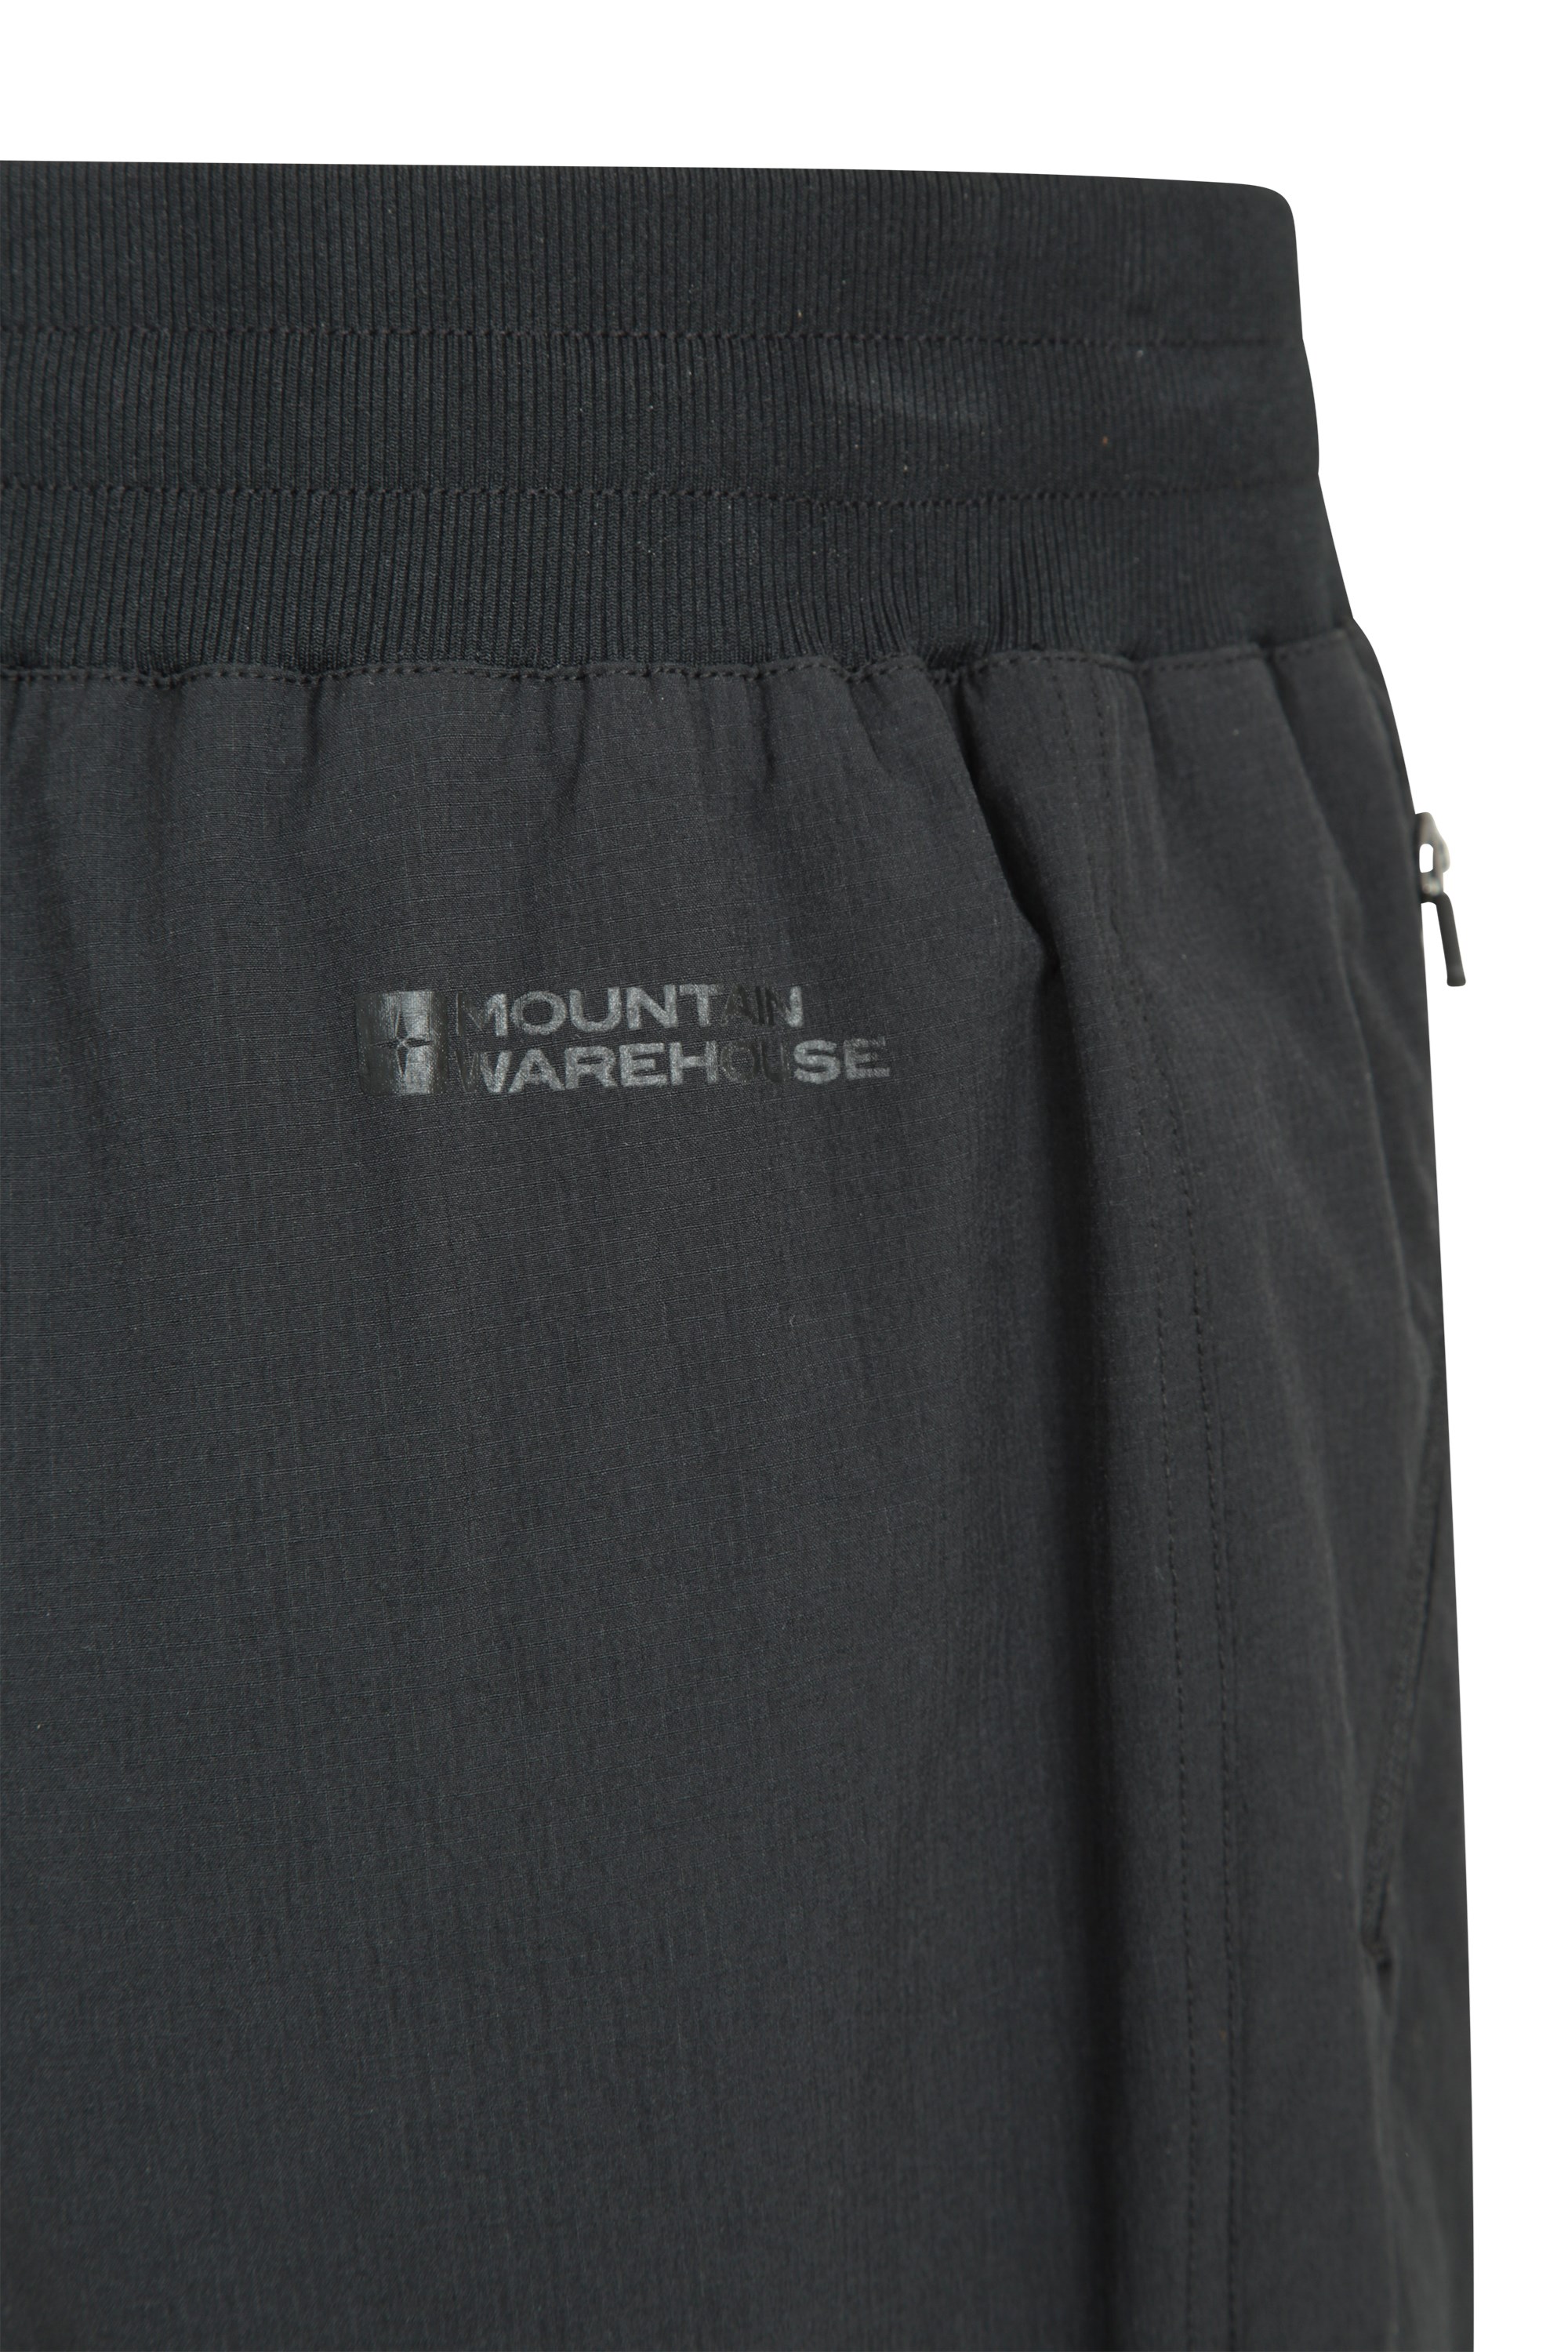 Adidas Utilitas Zip Off Pants Olistr Walking trousers : Snowleader